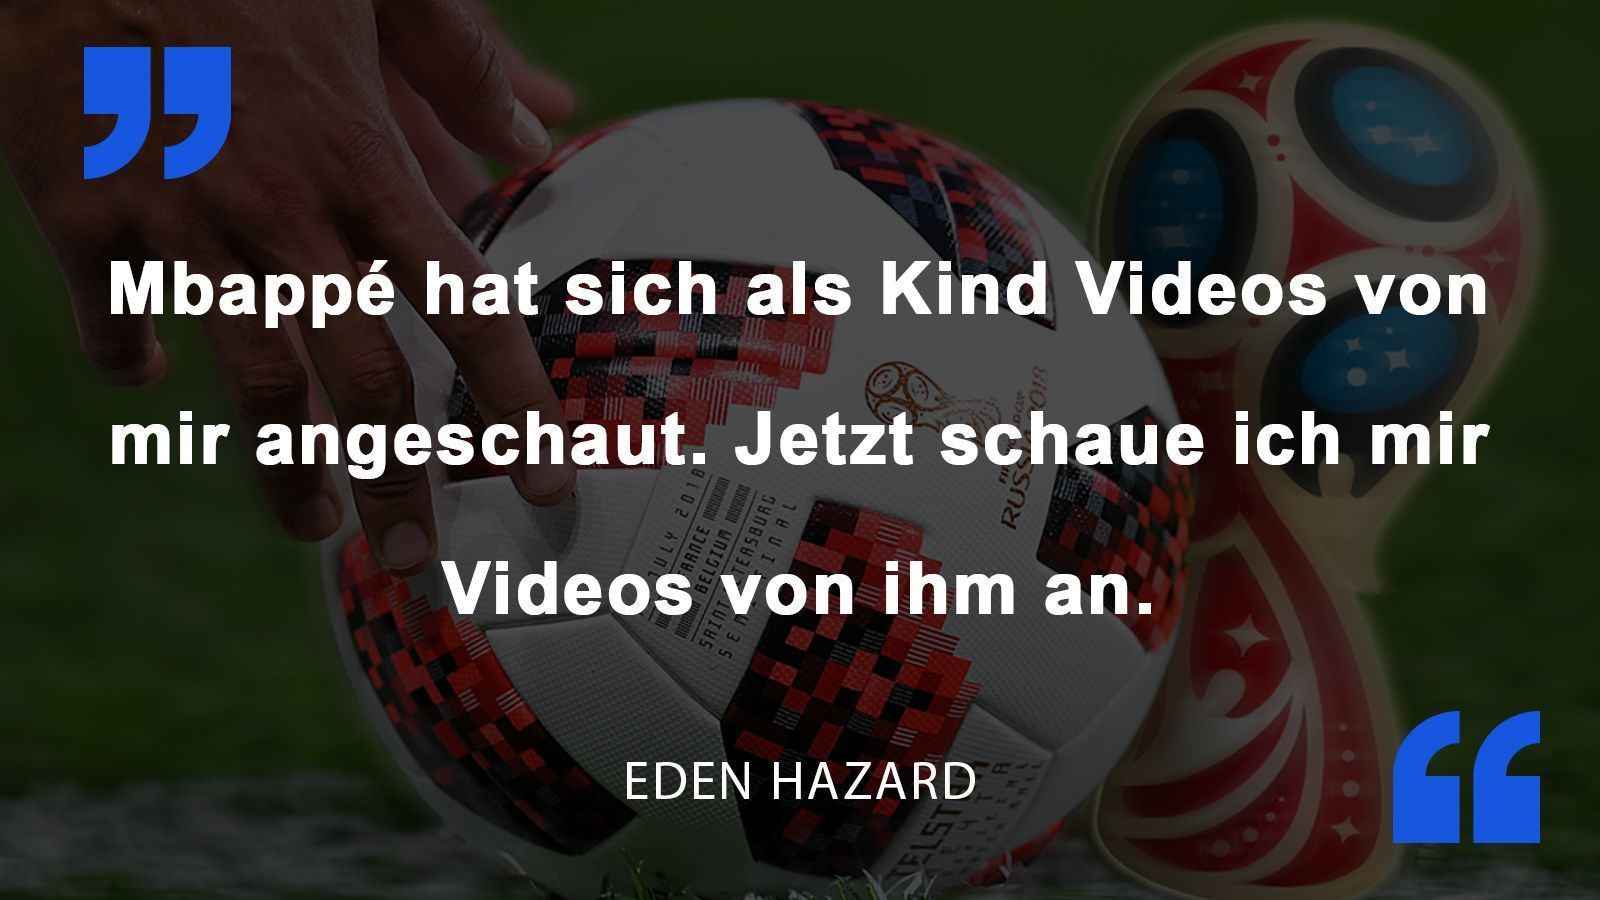 
                <strong>Eden Hazard</strong><br>
                Belgiens Eden Hazard vor dem Halbfinale gegen Frankreich um Ausnahmetalent Kylian Mbappe.
              